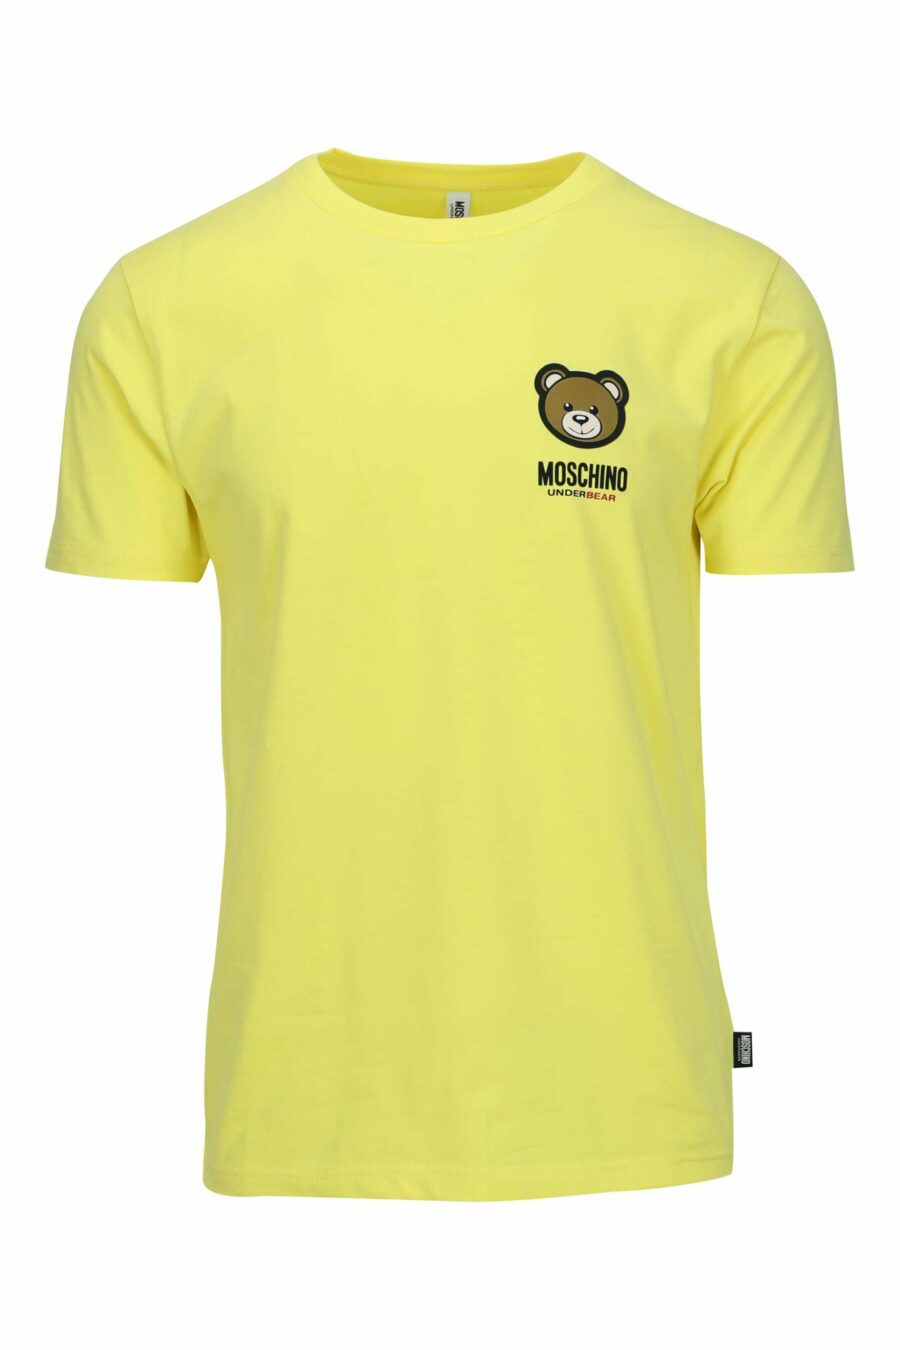 T-shirt amarela com mini logótipo de urso "underbear" - 667113605913 scaled